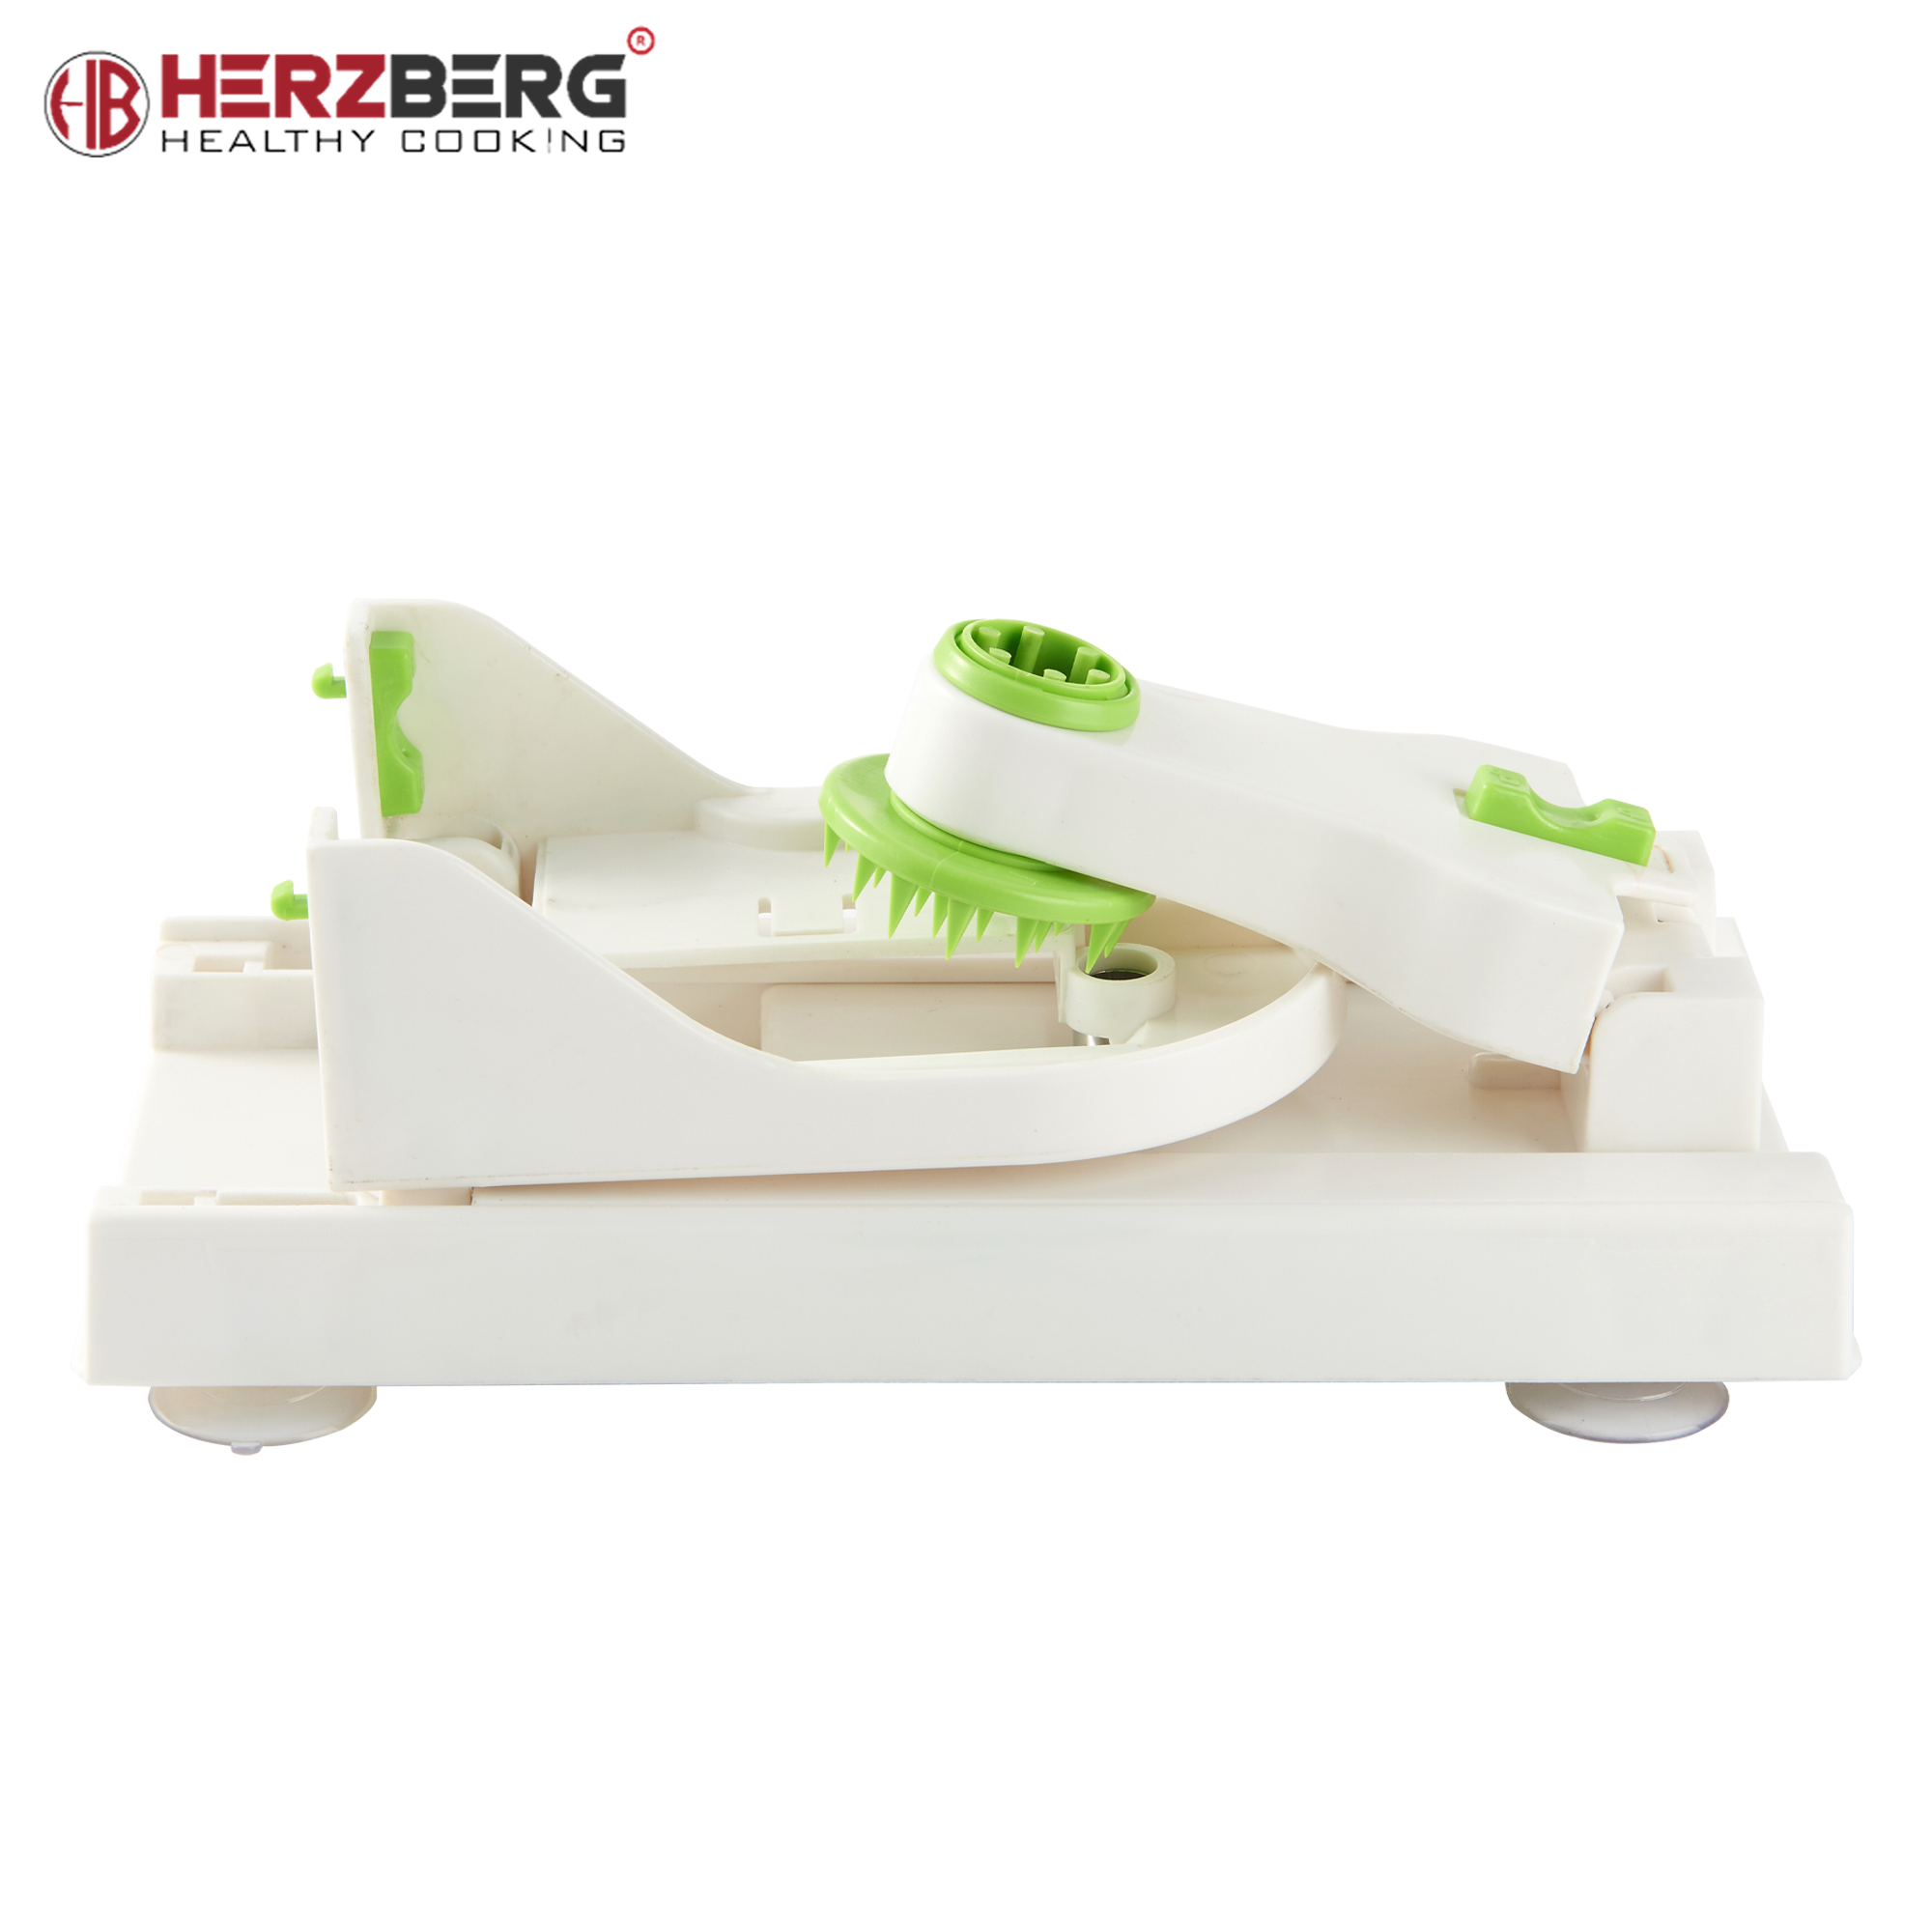 Herzberg HG-8030: Juego de espiralizador de verduras